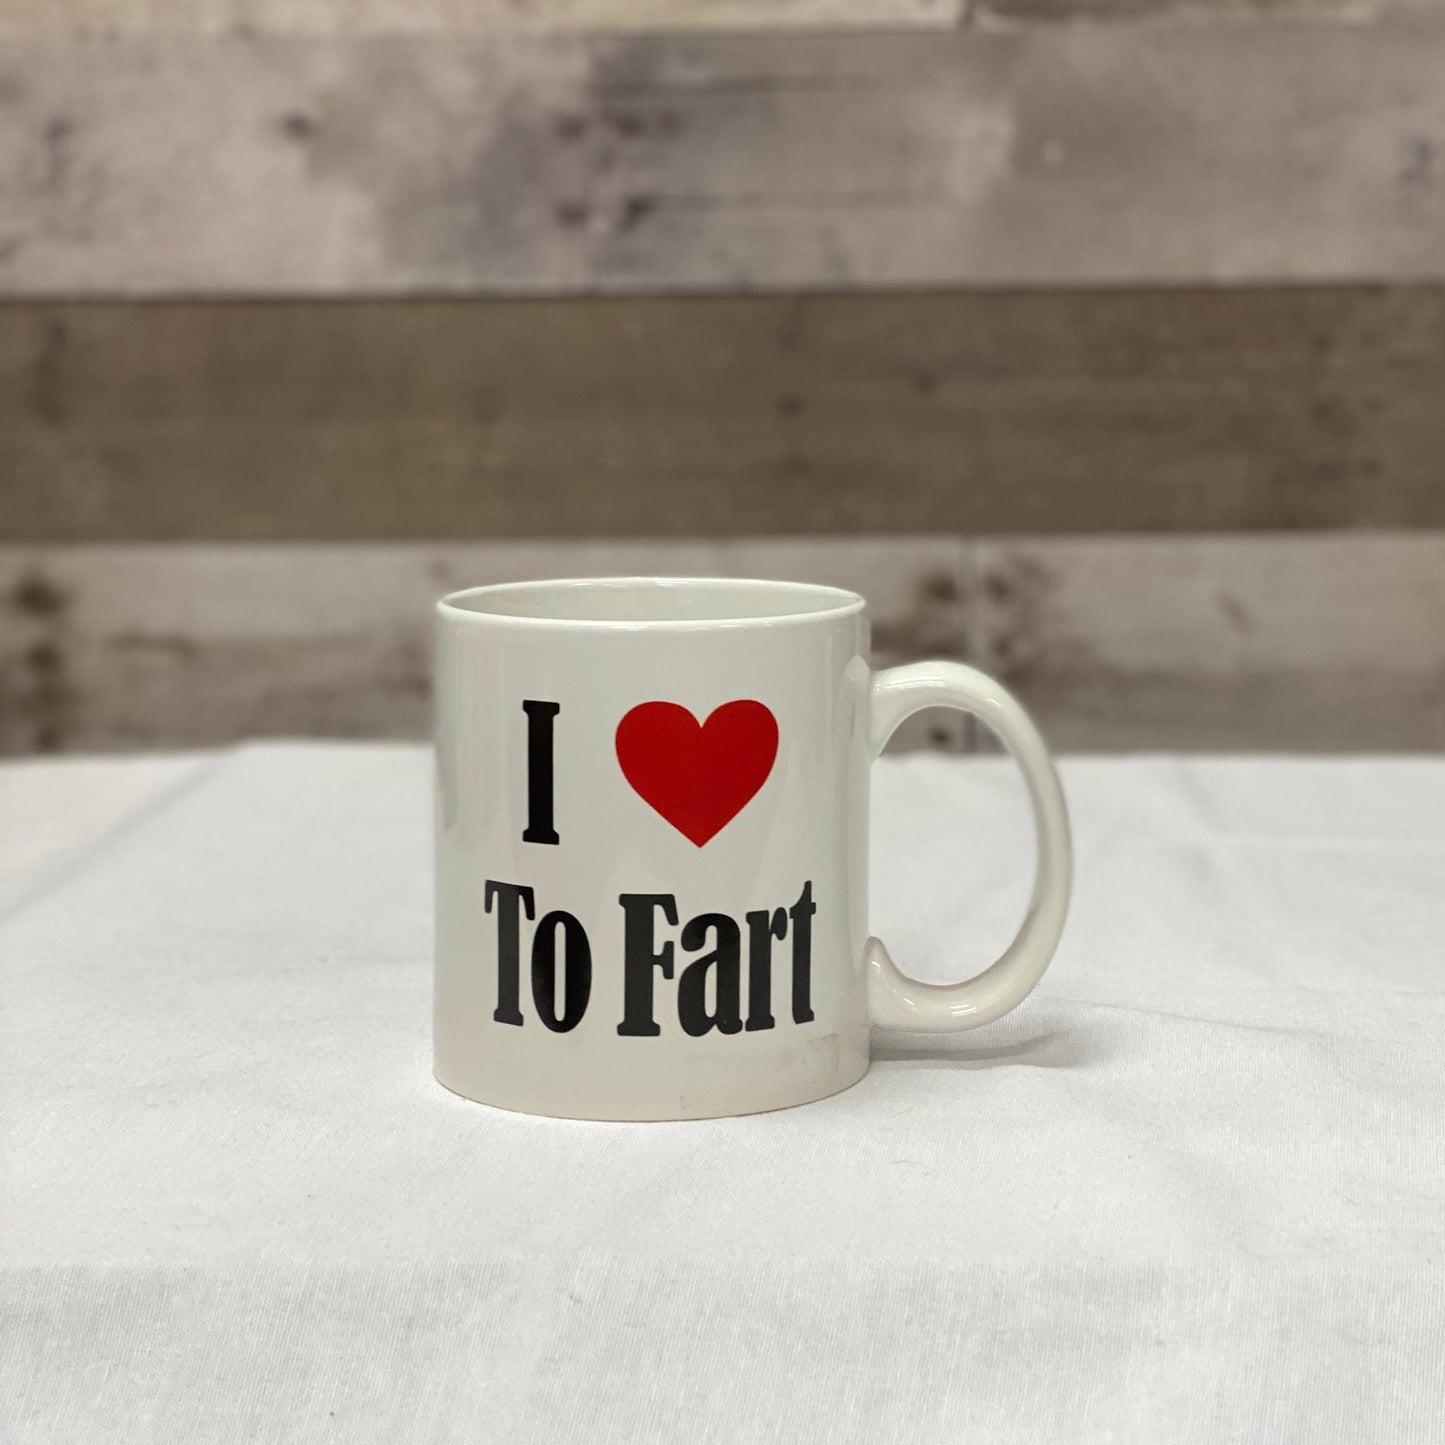 Giant Mug I (Heart) To Fart